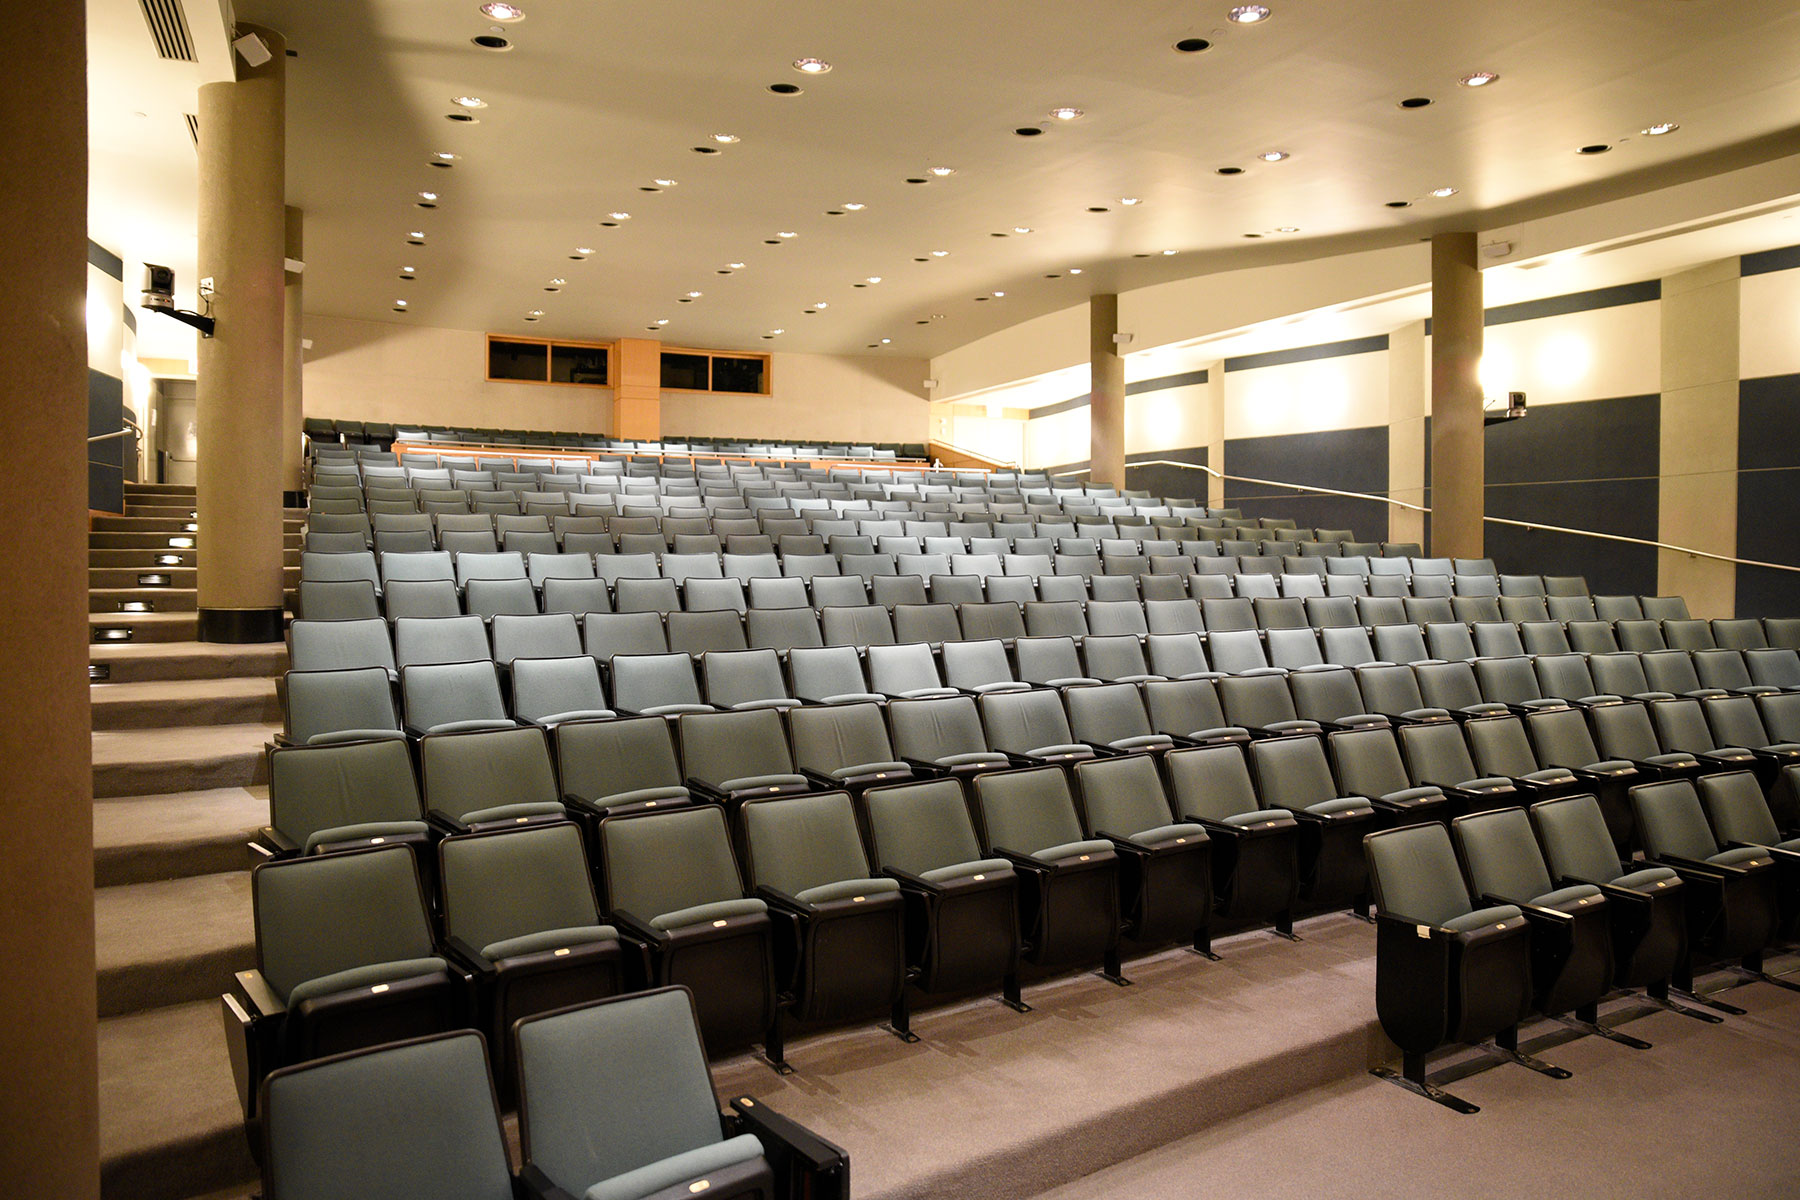 Proshansky Auditorium - Auditorium Rental in NYC. Comfortable audience seating.